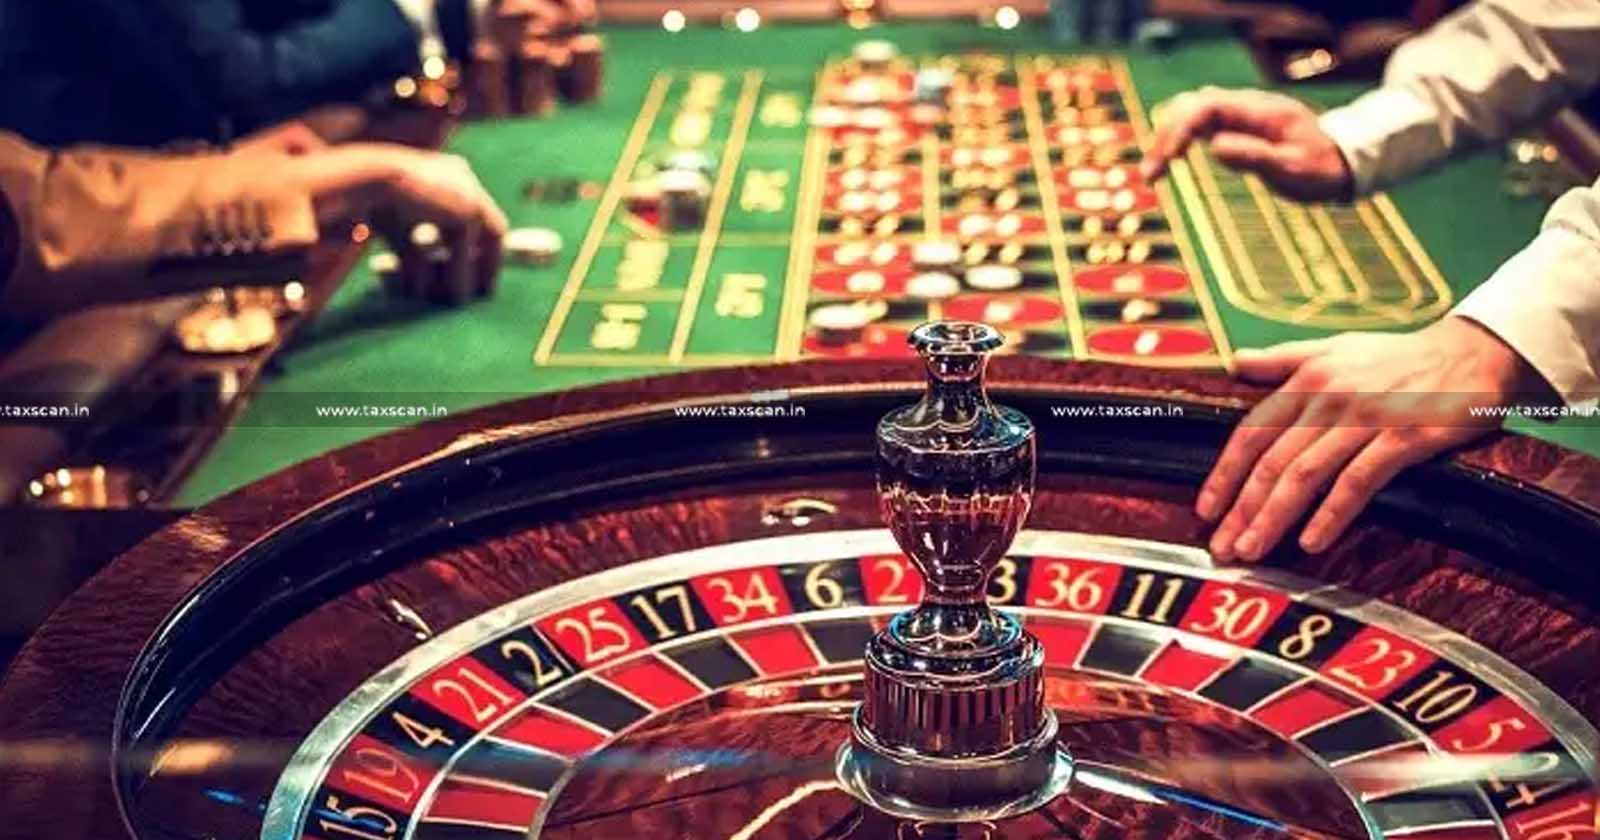 Demand - Gambling Casinos - ARF - Bombay Highcourt - Principal interest -  waives Interest - Demand on Gambling Casinos - taxscan